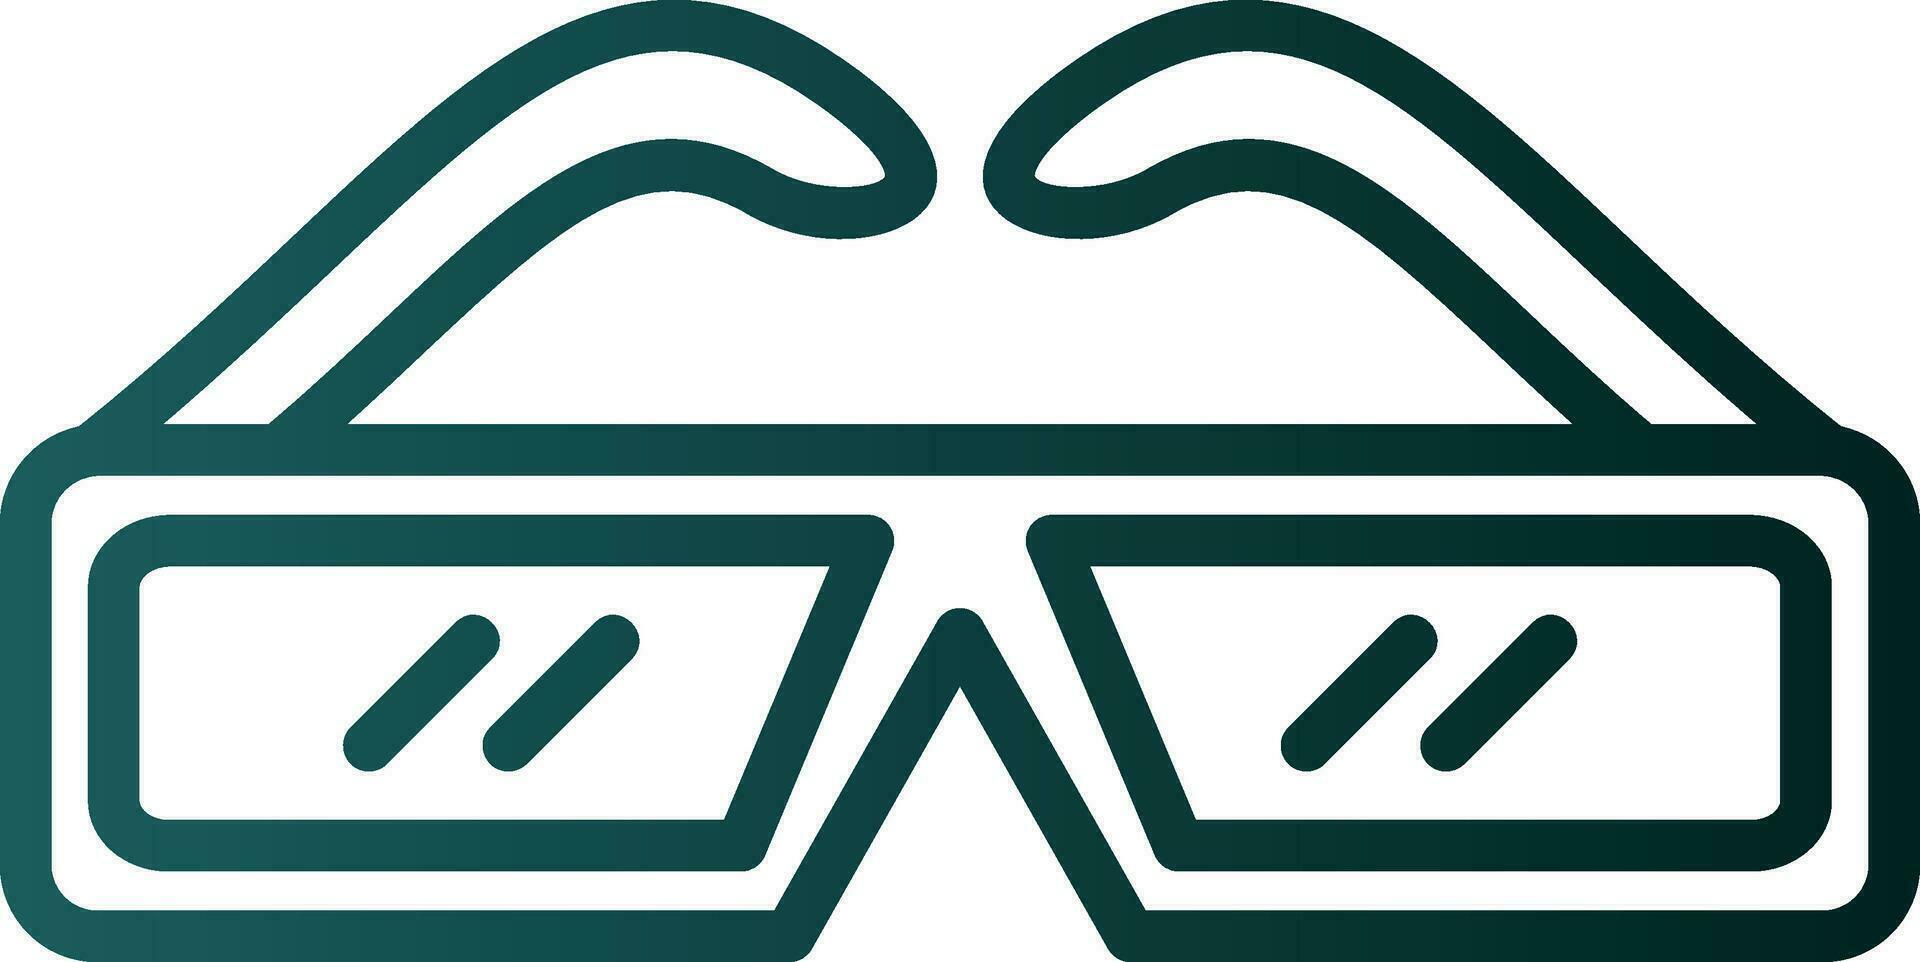 3d glasses Vector Icon Design